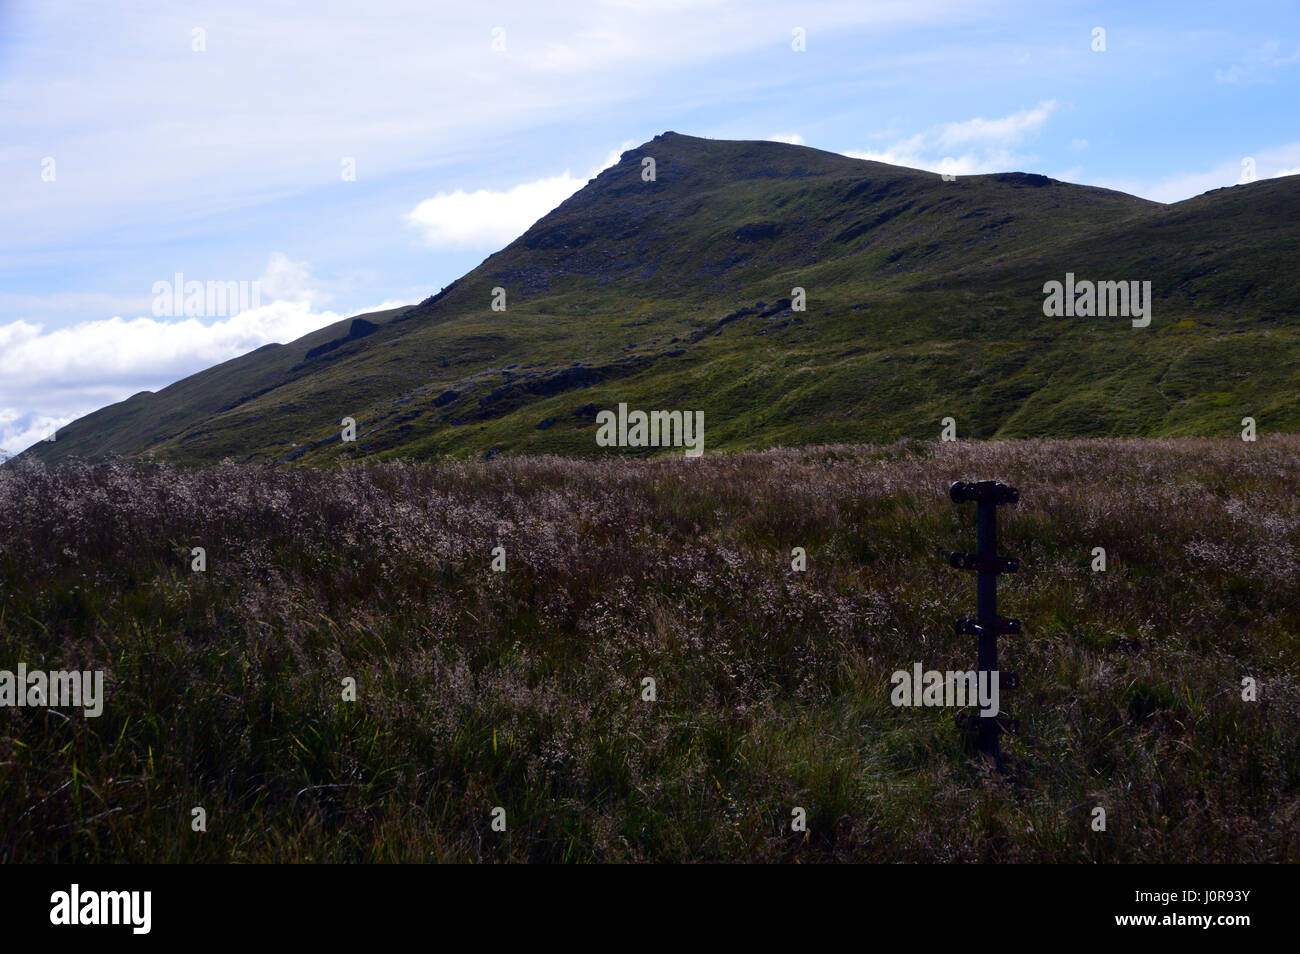 La Cordillera del Norte de la Montaña Escocesa Corbett Ben Ledi desde cerca de Loch nan Corp en el Parque Nacional Trossachs, Tierras Altas Escocesas. Foto de stock